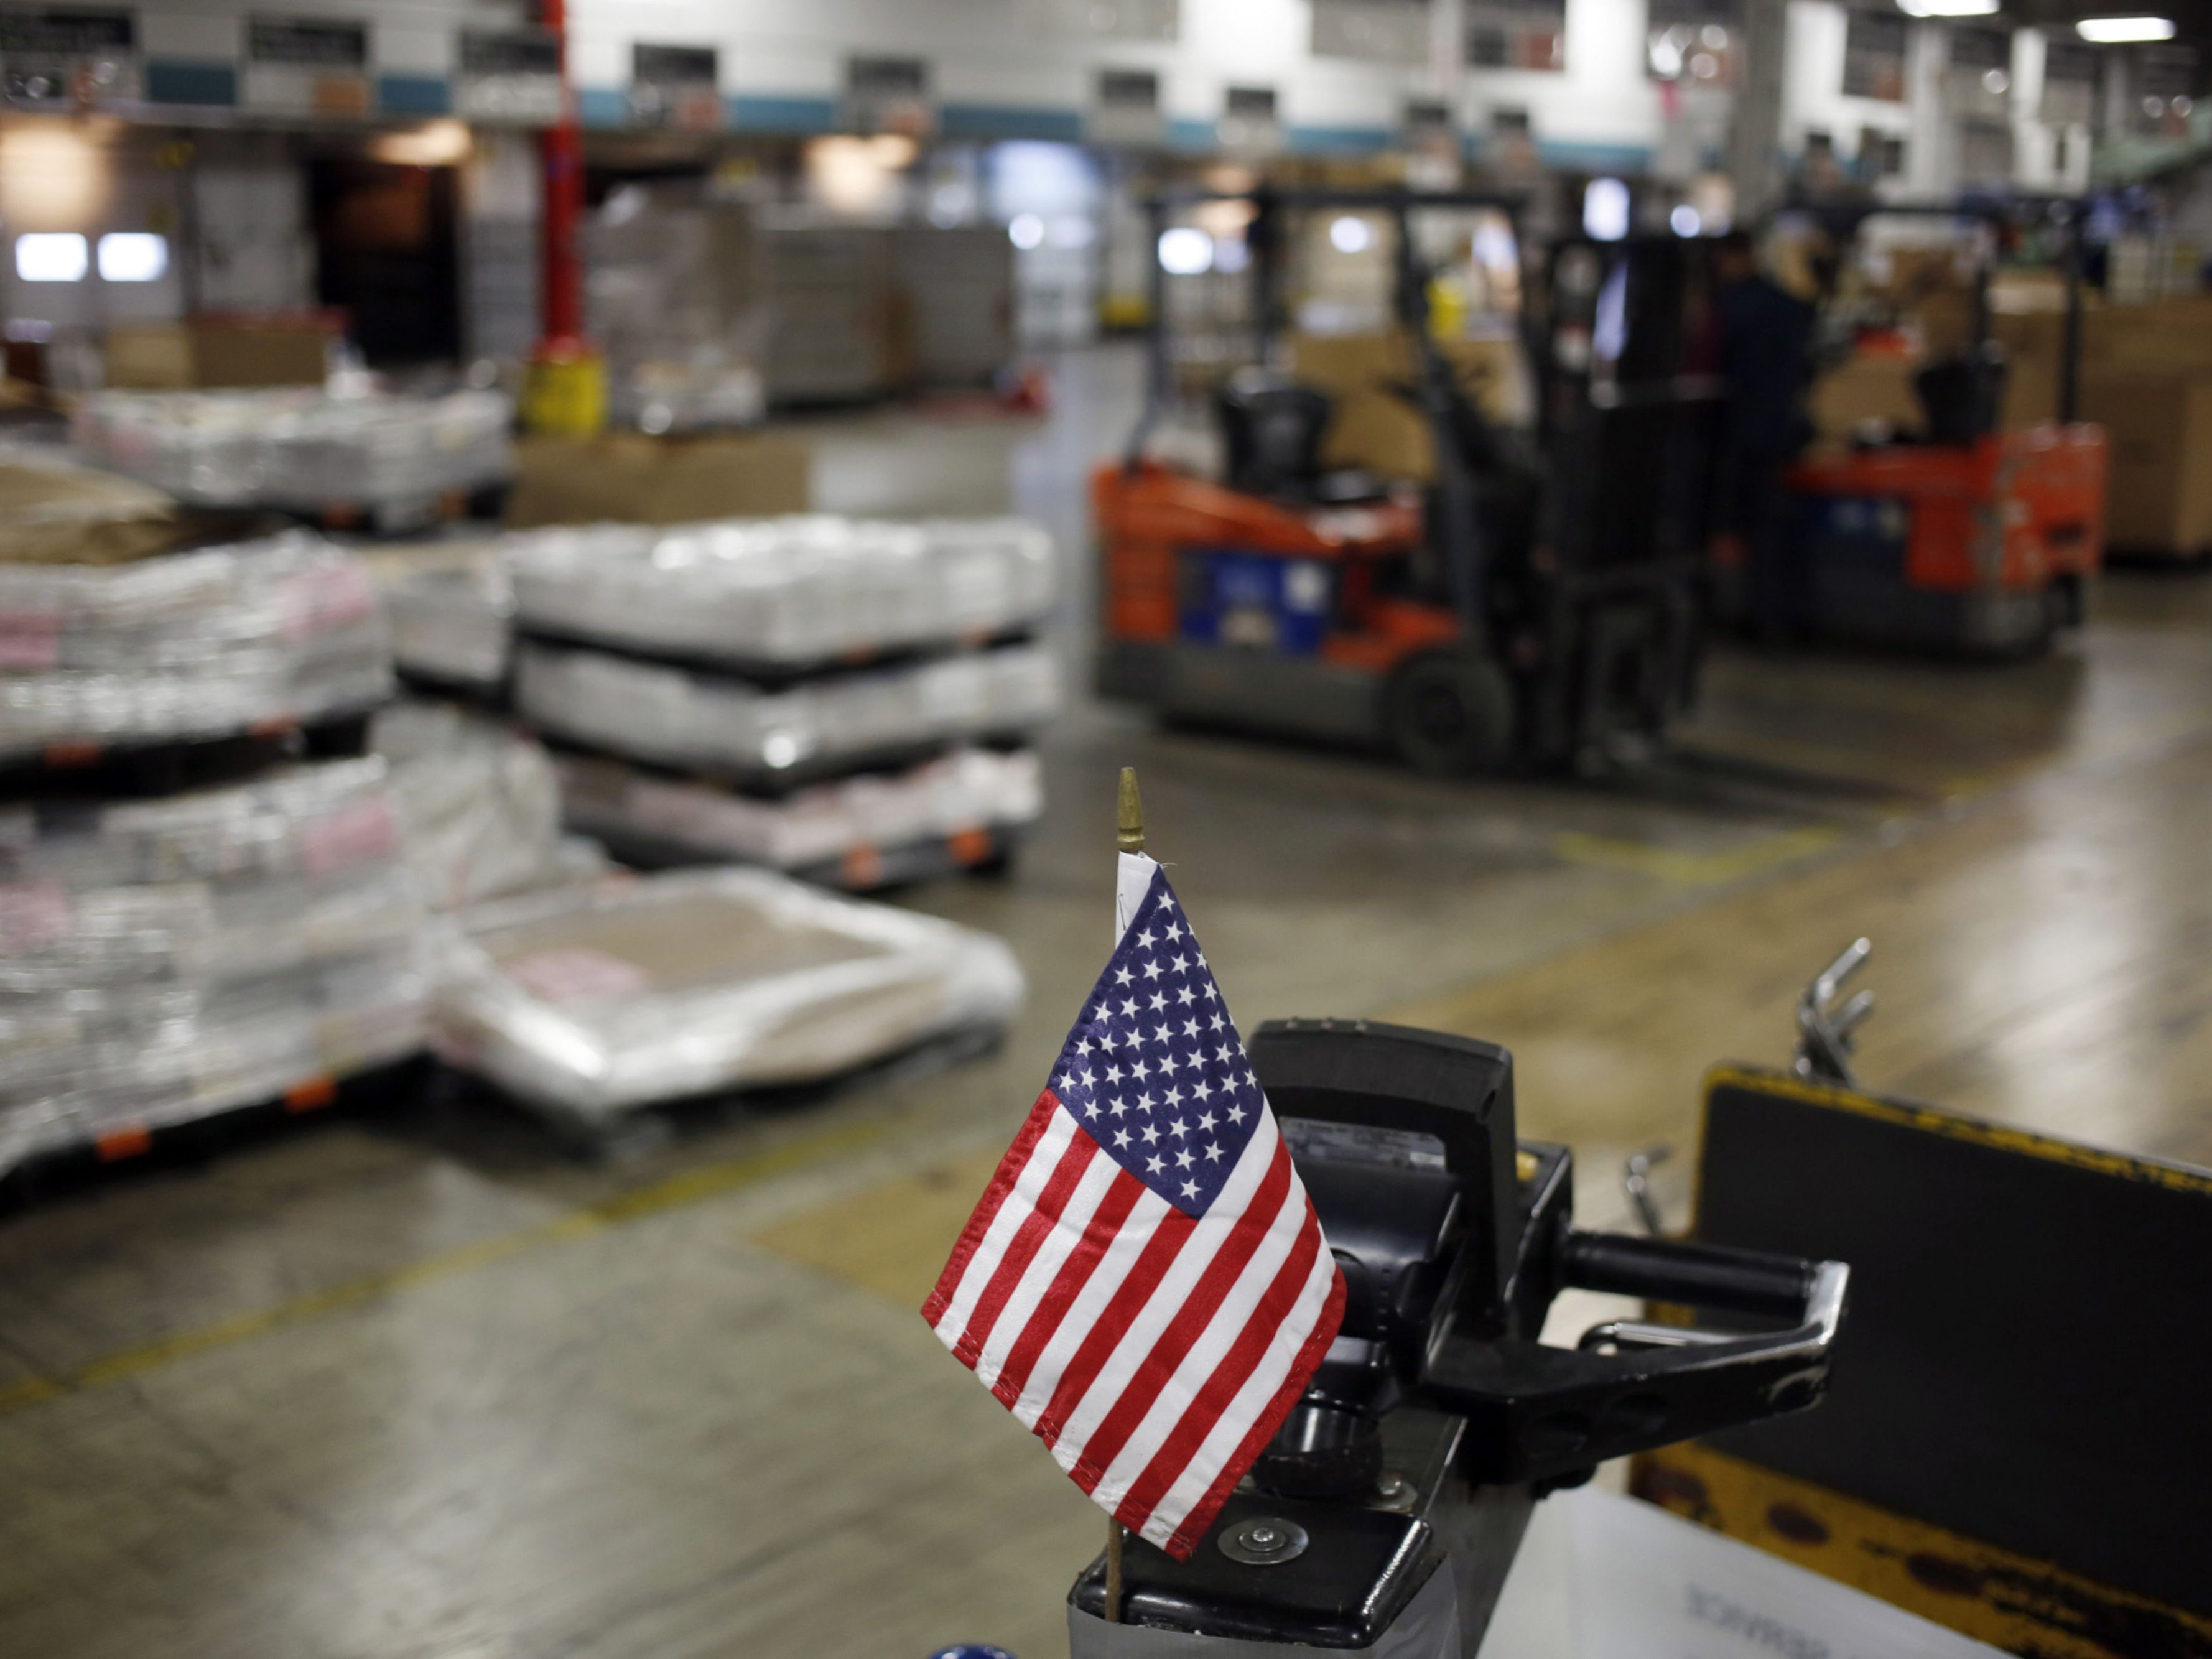 U.S. Manufacturing